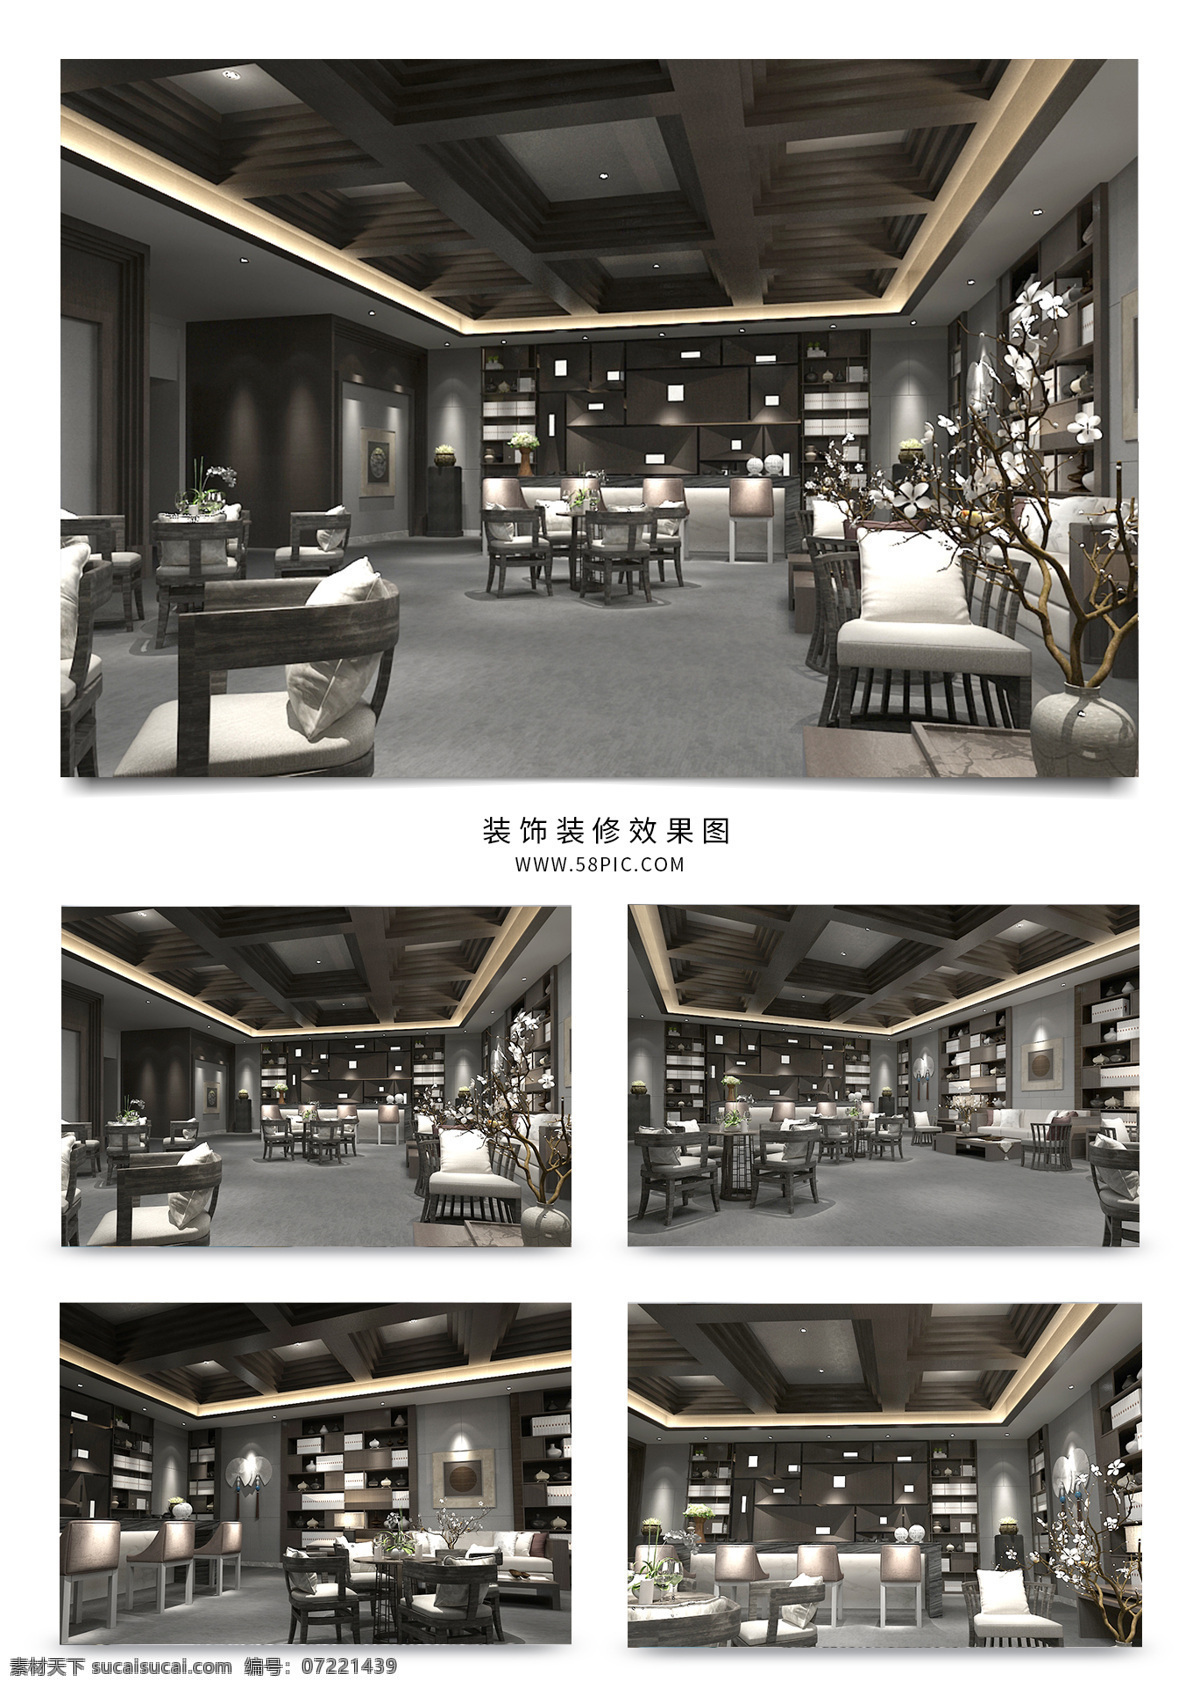 现代 中式 餐厅 效果图 模型 简约 餐桌 大厅 餐椅 大理石 木质 吊顶